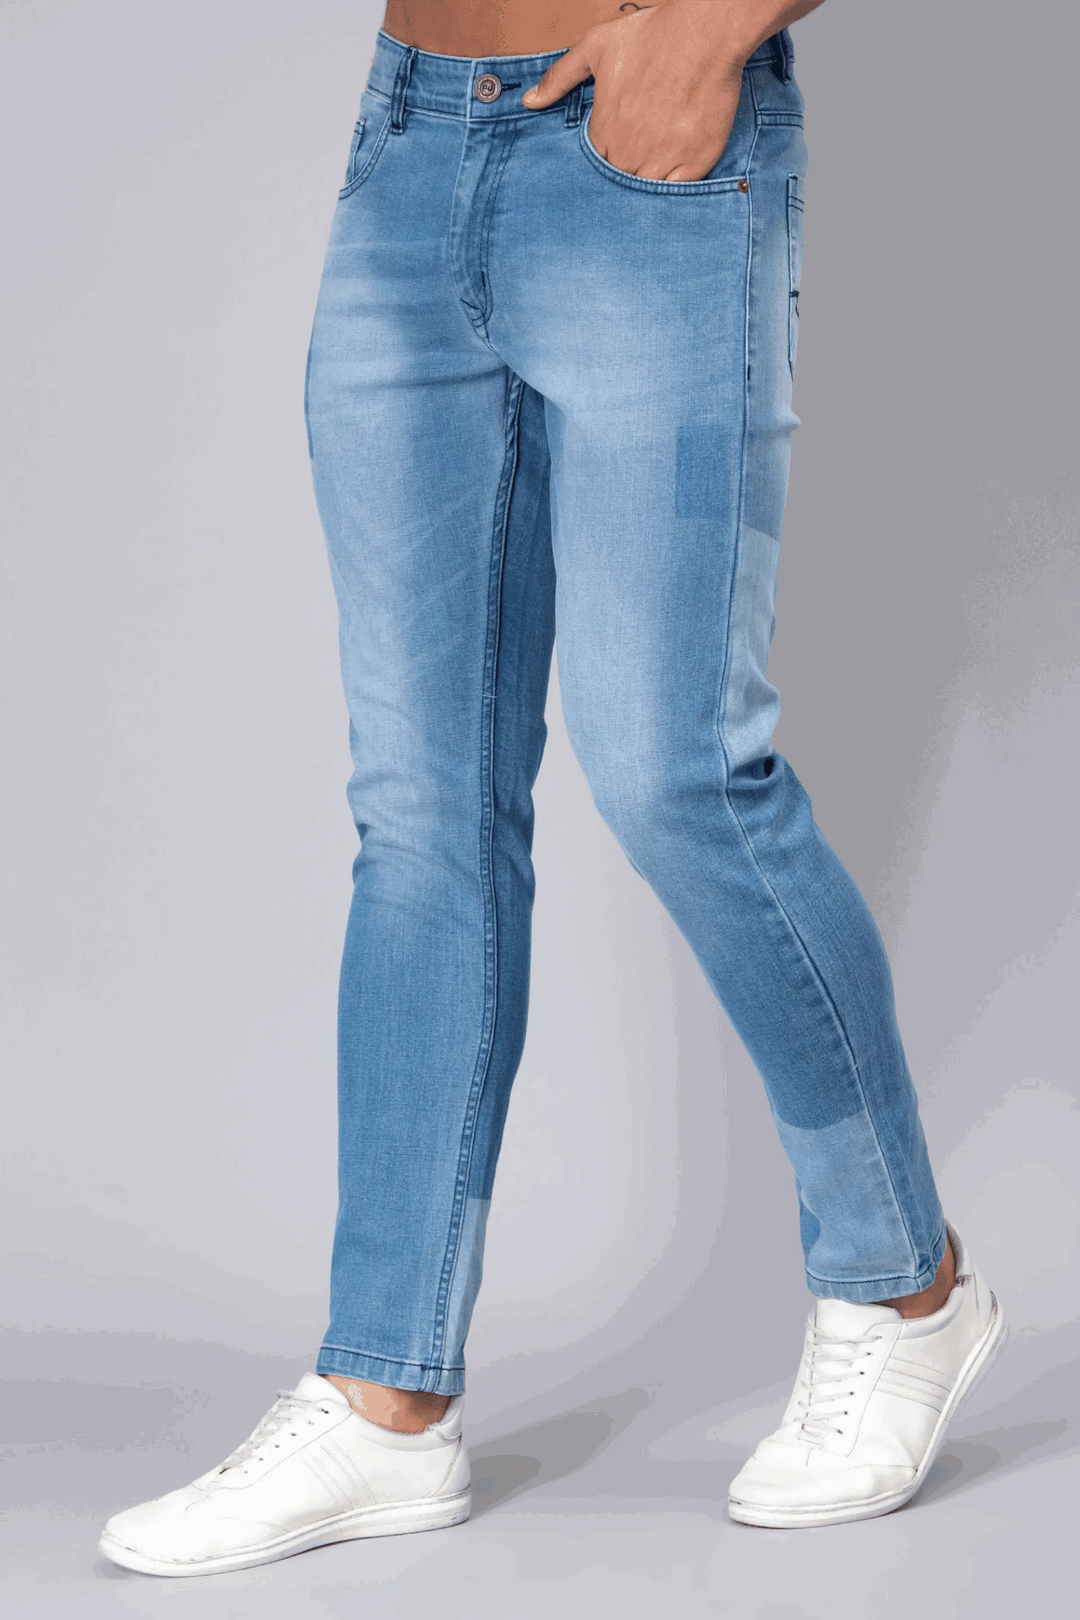 Ankle Fit Light Shade Blue Denim Jeans For men - Peplos Jeans 